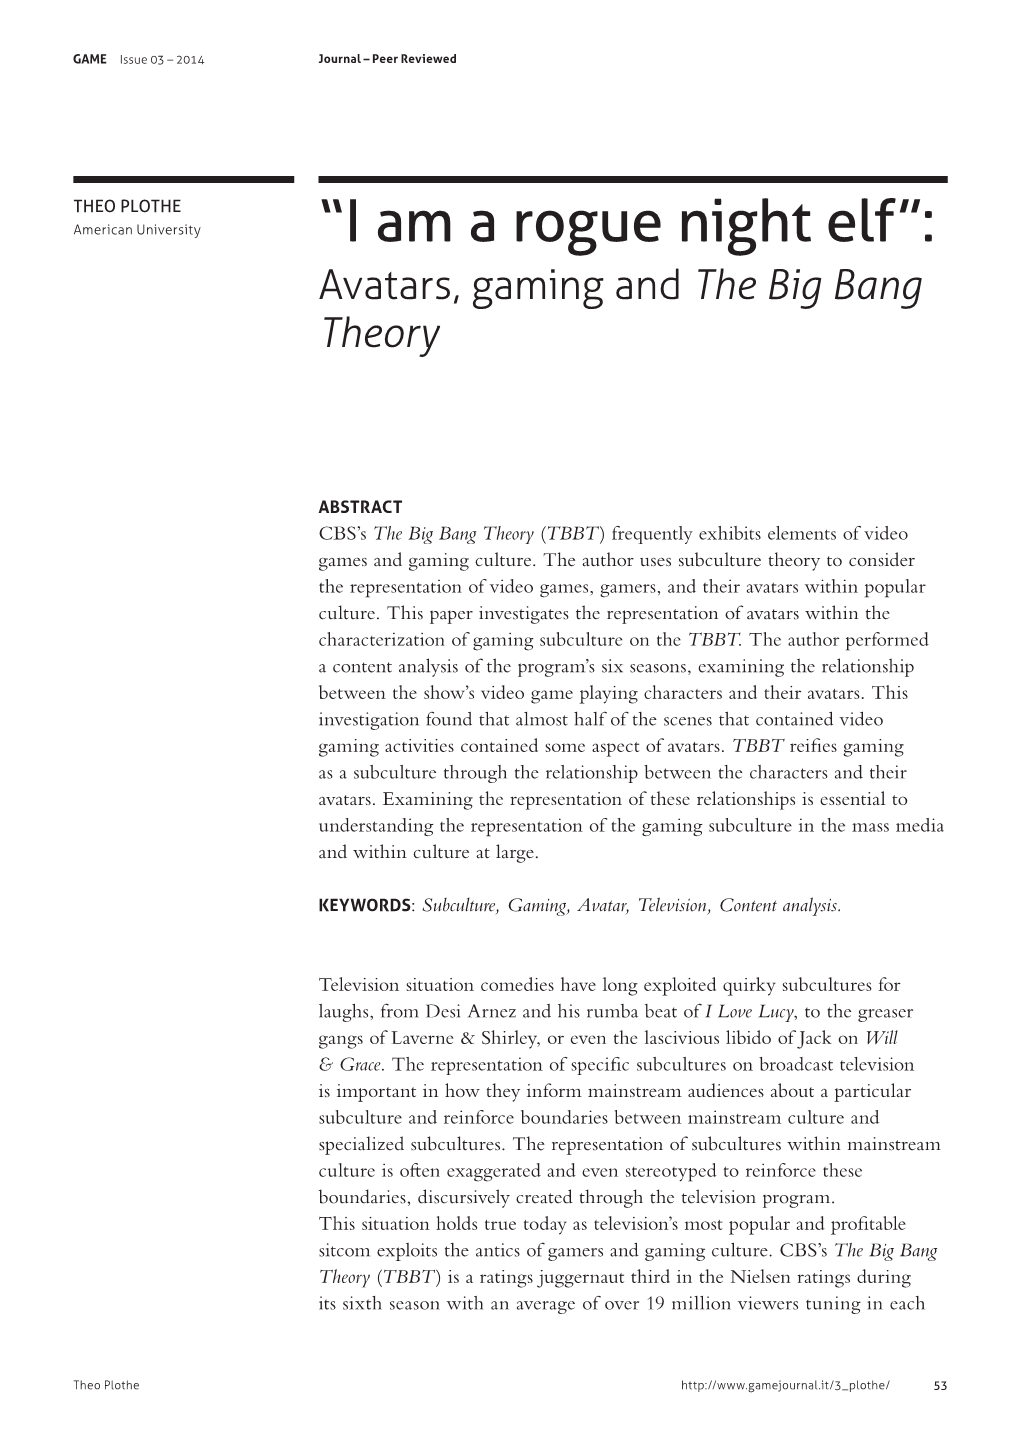 “I Am a Rogue Night Elf”: Avatars, Gaming and the Big Bang Theory